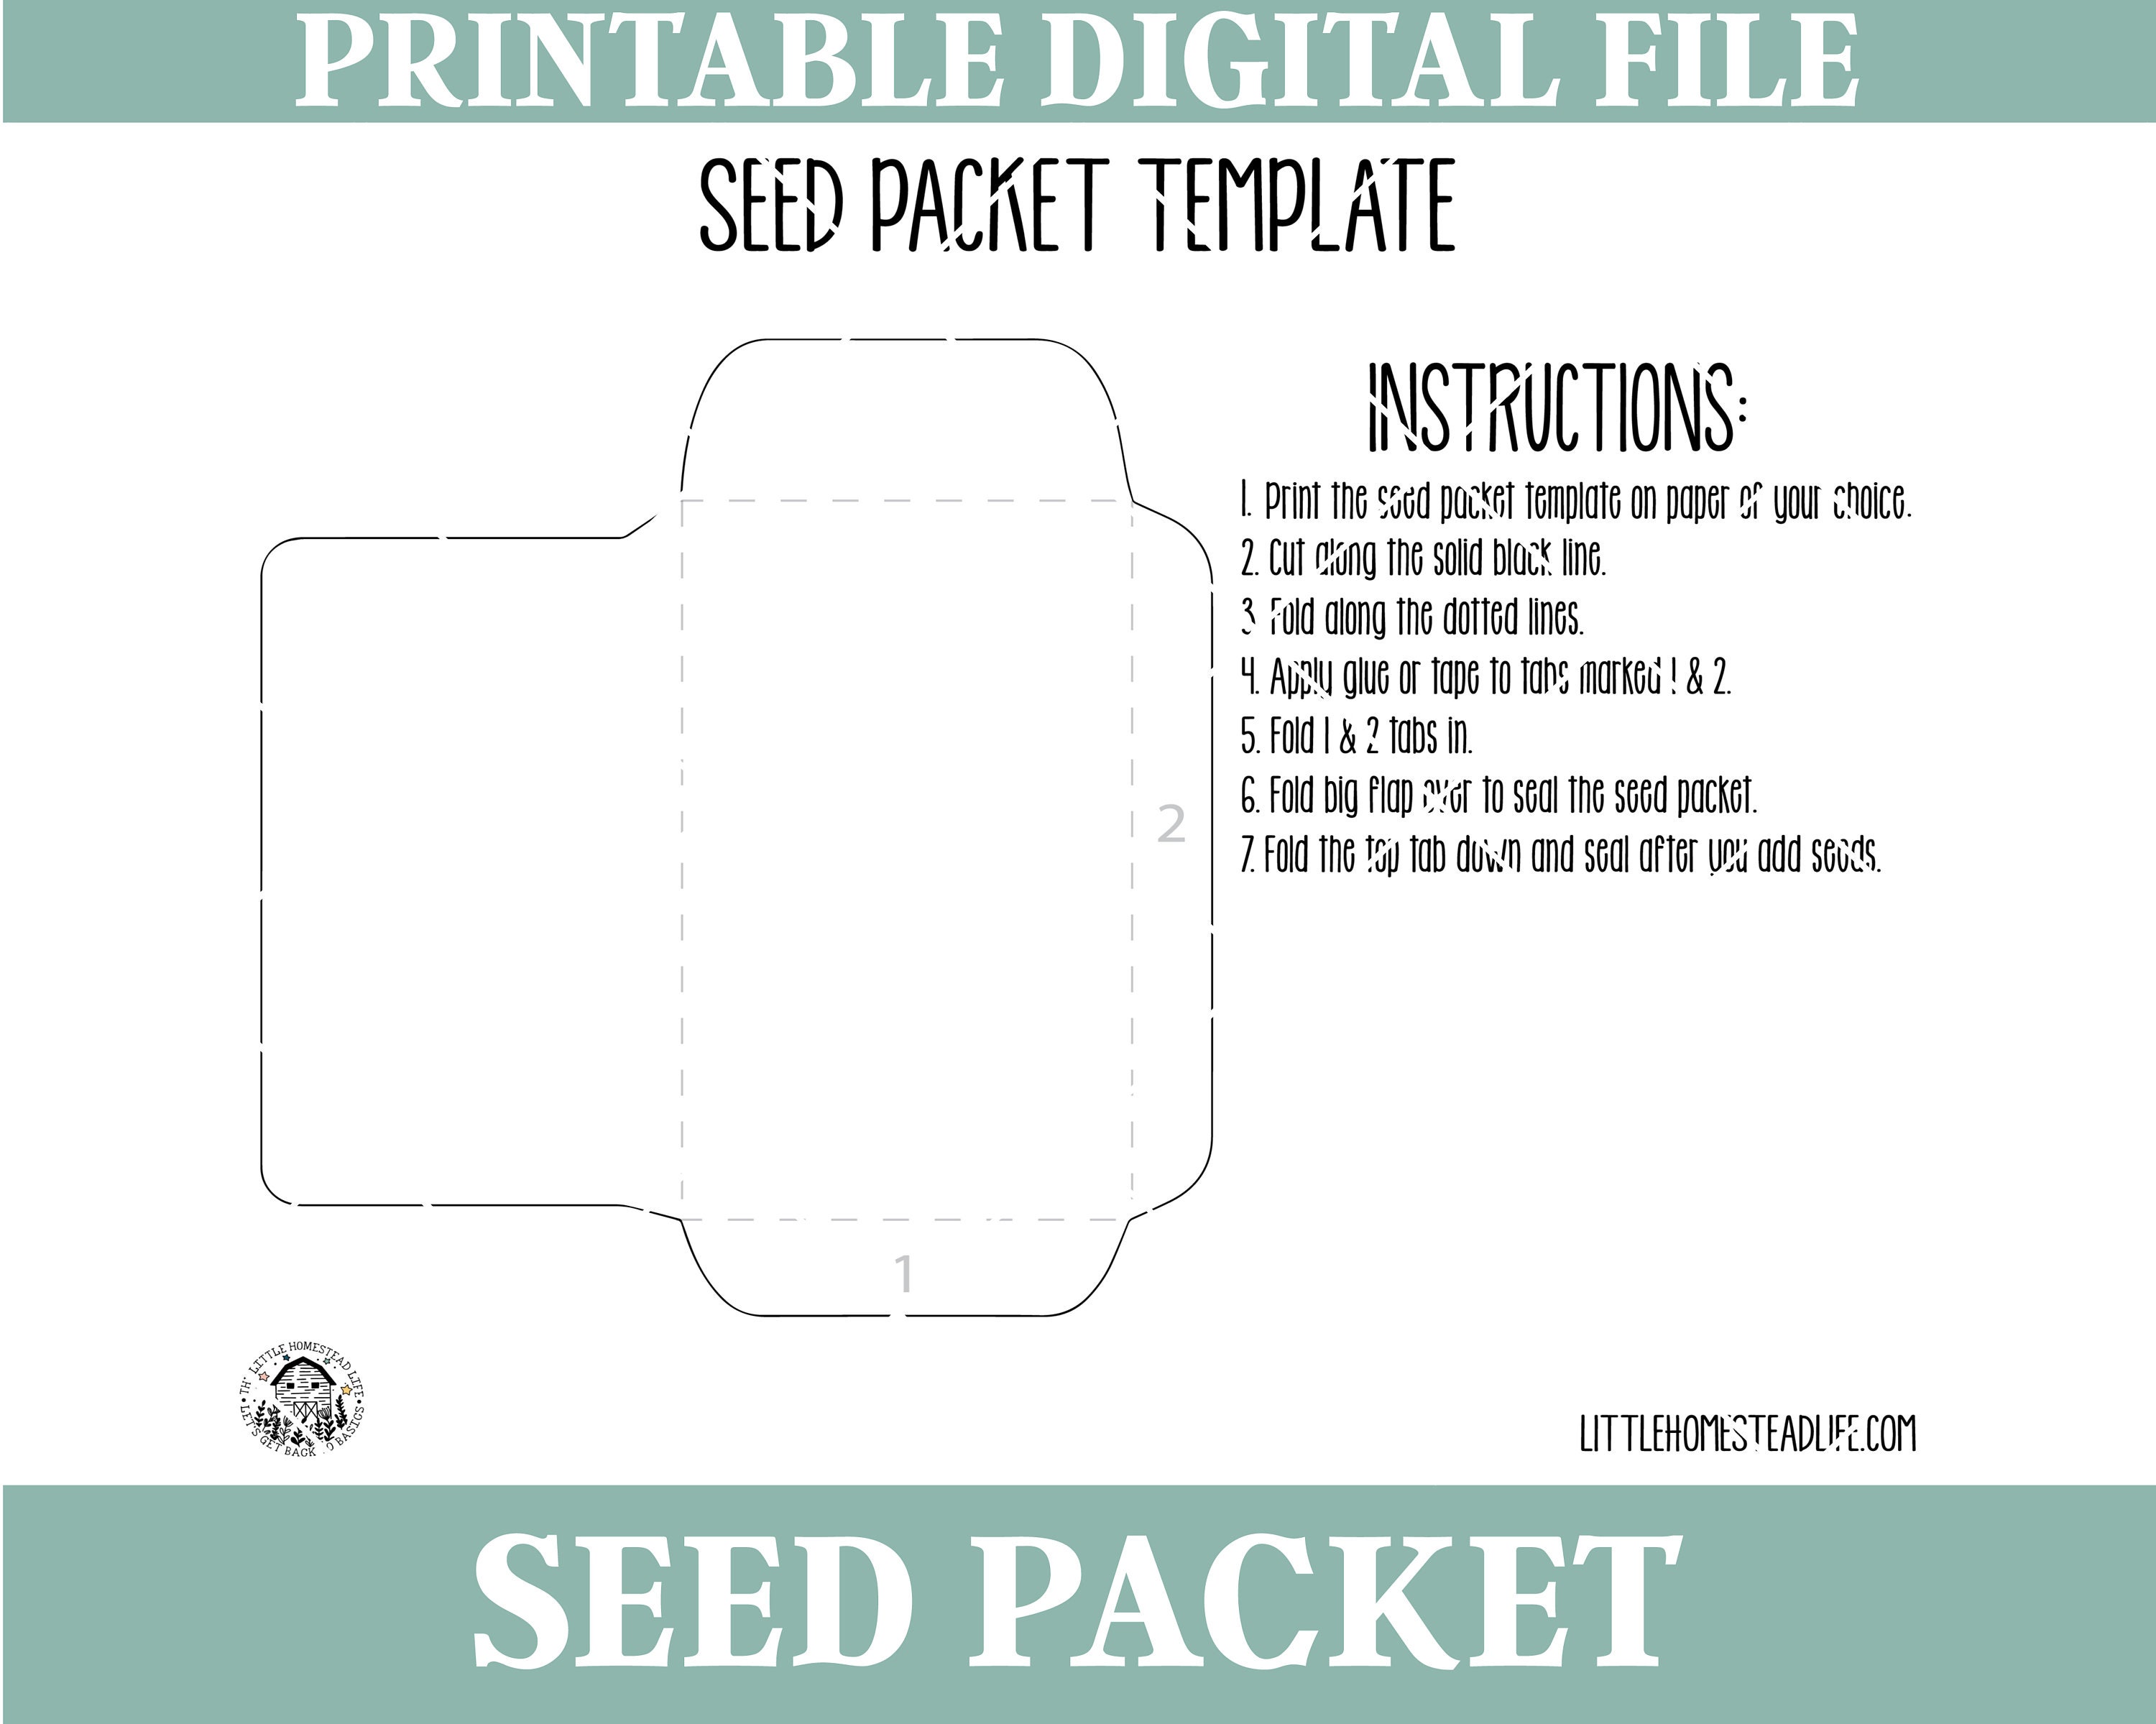 DIY Seed Packet Organizer (Free Sewing Pattern)